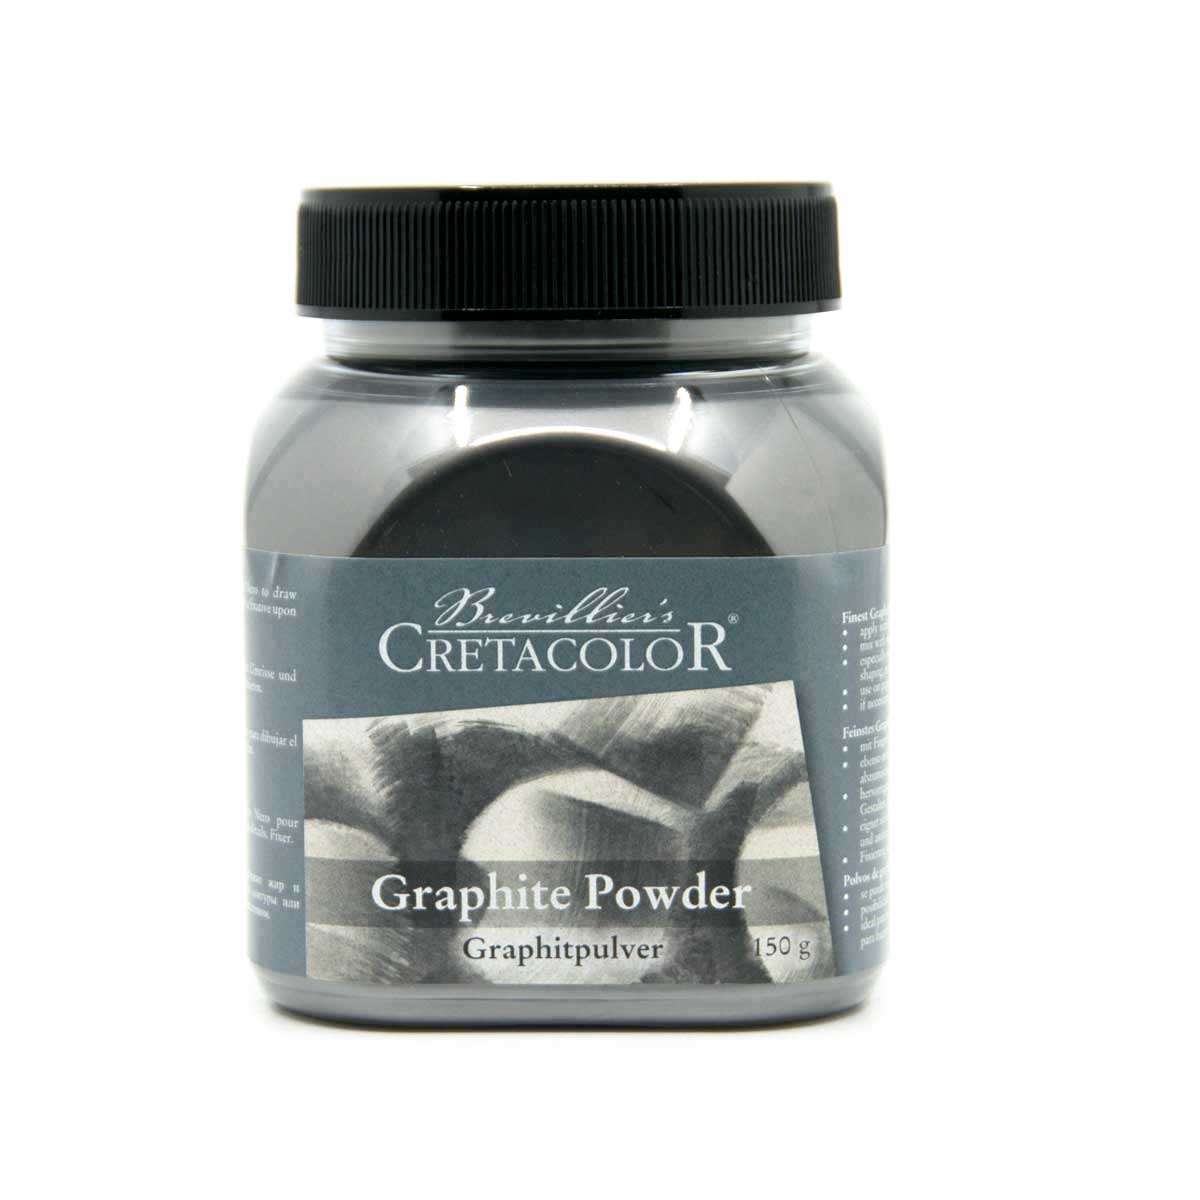 Cretacolor Graphite Powder 150 g Jar